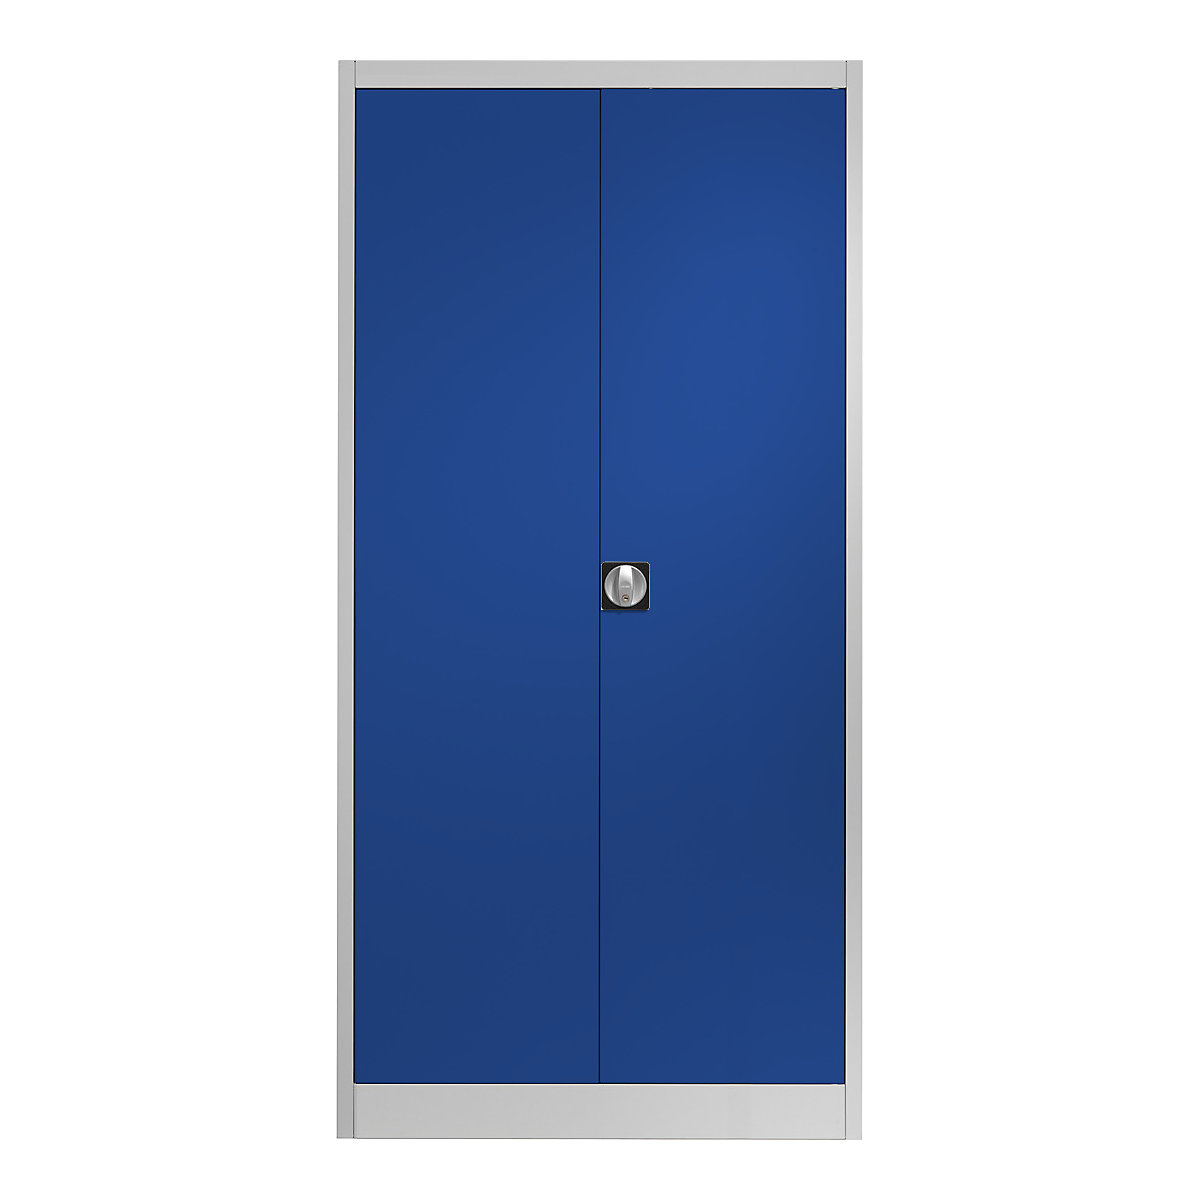 Jeklena omara s krilnimi vrati – mauser, 4 police, globina 600 mm, svetlo siv / ultramarin moder-7